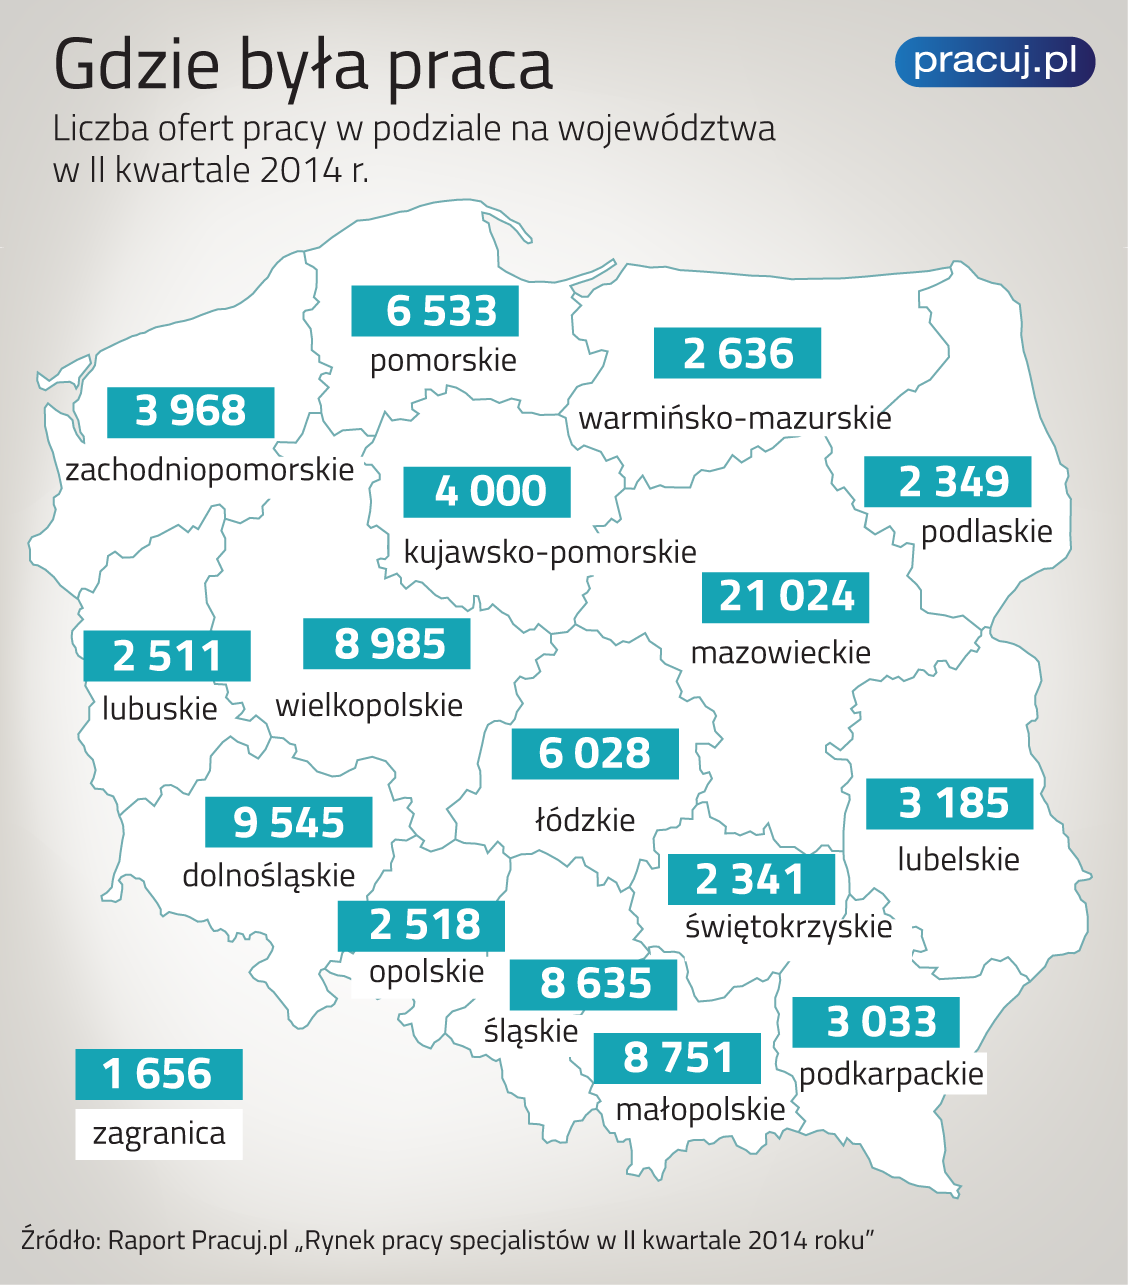 GDZIE BYŁA PRACA Najwięcej ofert, bo ponad 1/5, pochodziło z Mazowsza, a w zasadzie z Warszawy, bo blisko ¾ propozycji pracy z tego województwa to ogłoszenia ze stolicy.